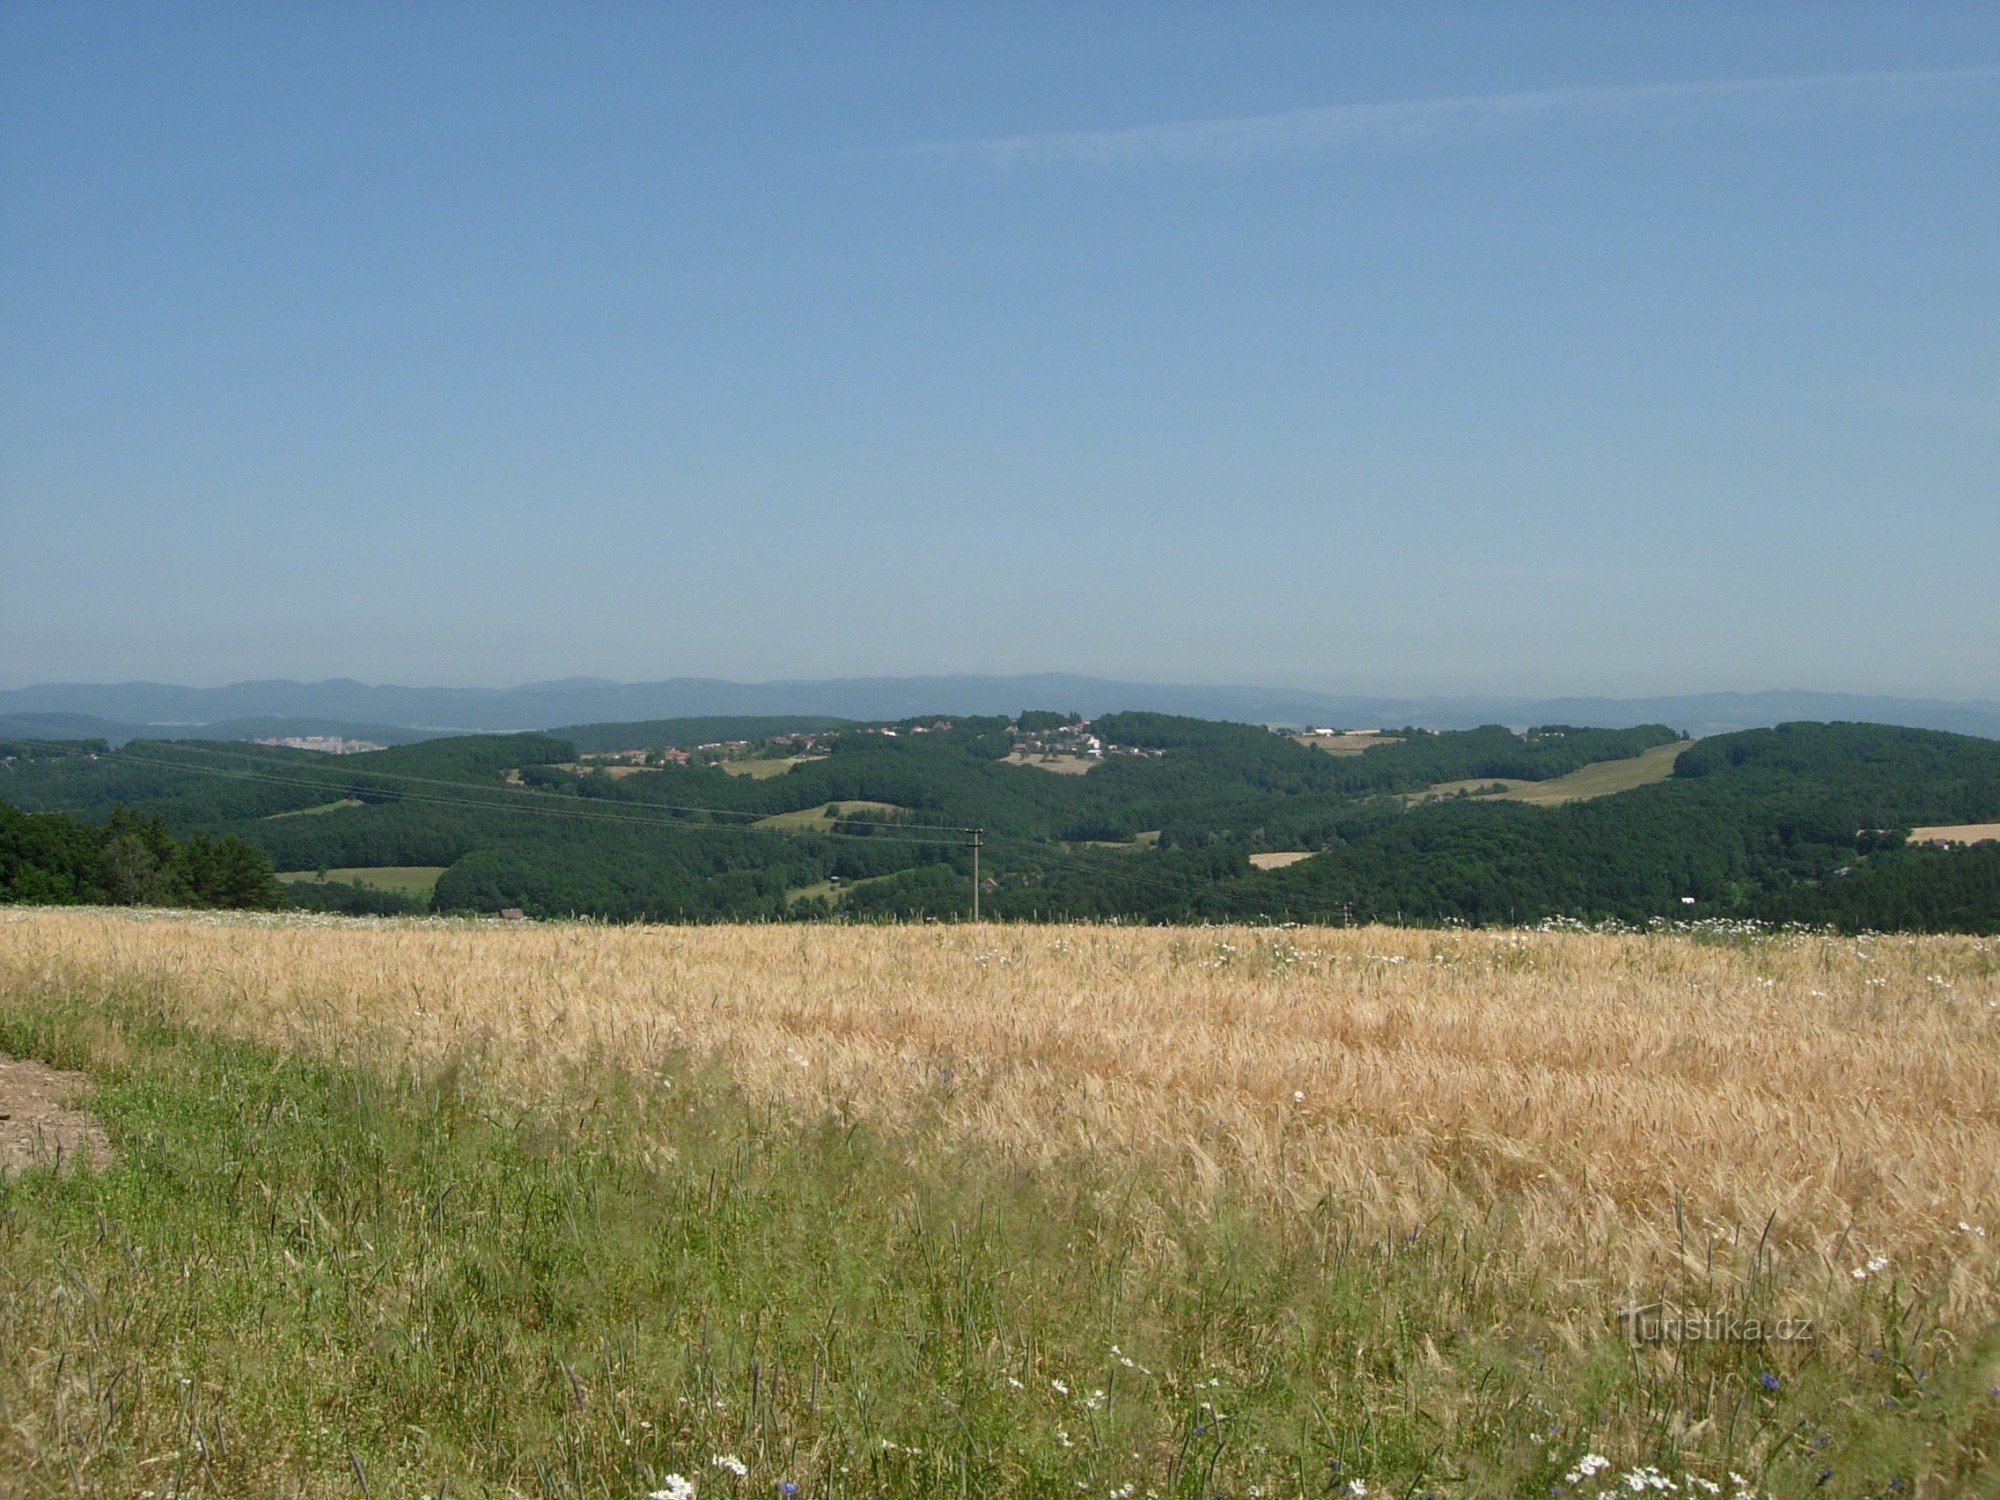 Zlín Highlands med Kudlov, Hostýnské Hills i ryggen, Zlína bostadsområde till vänster